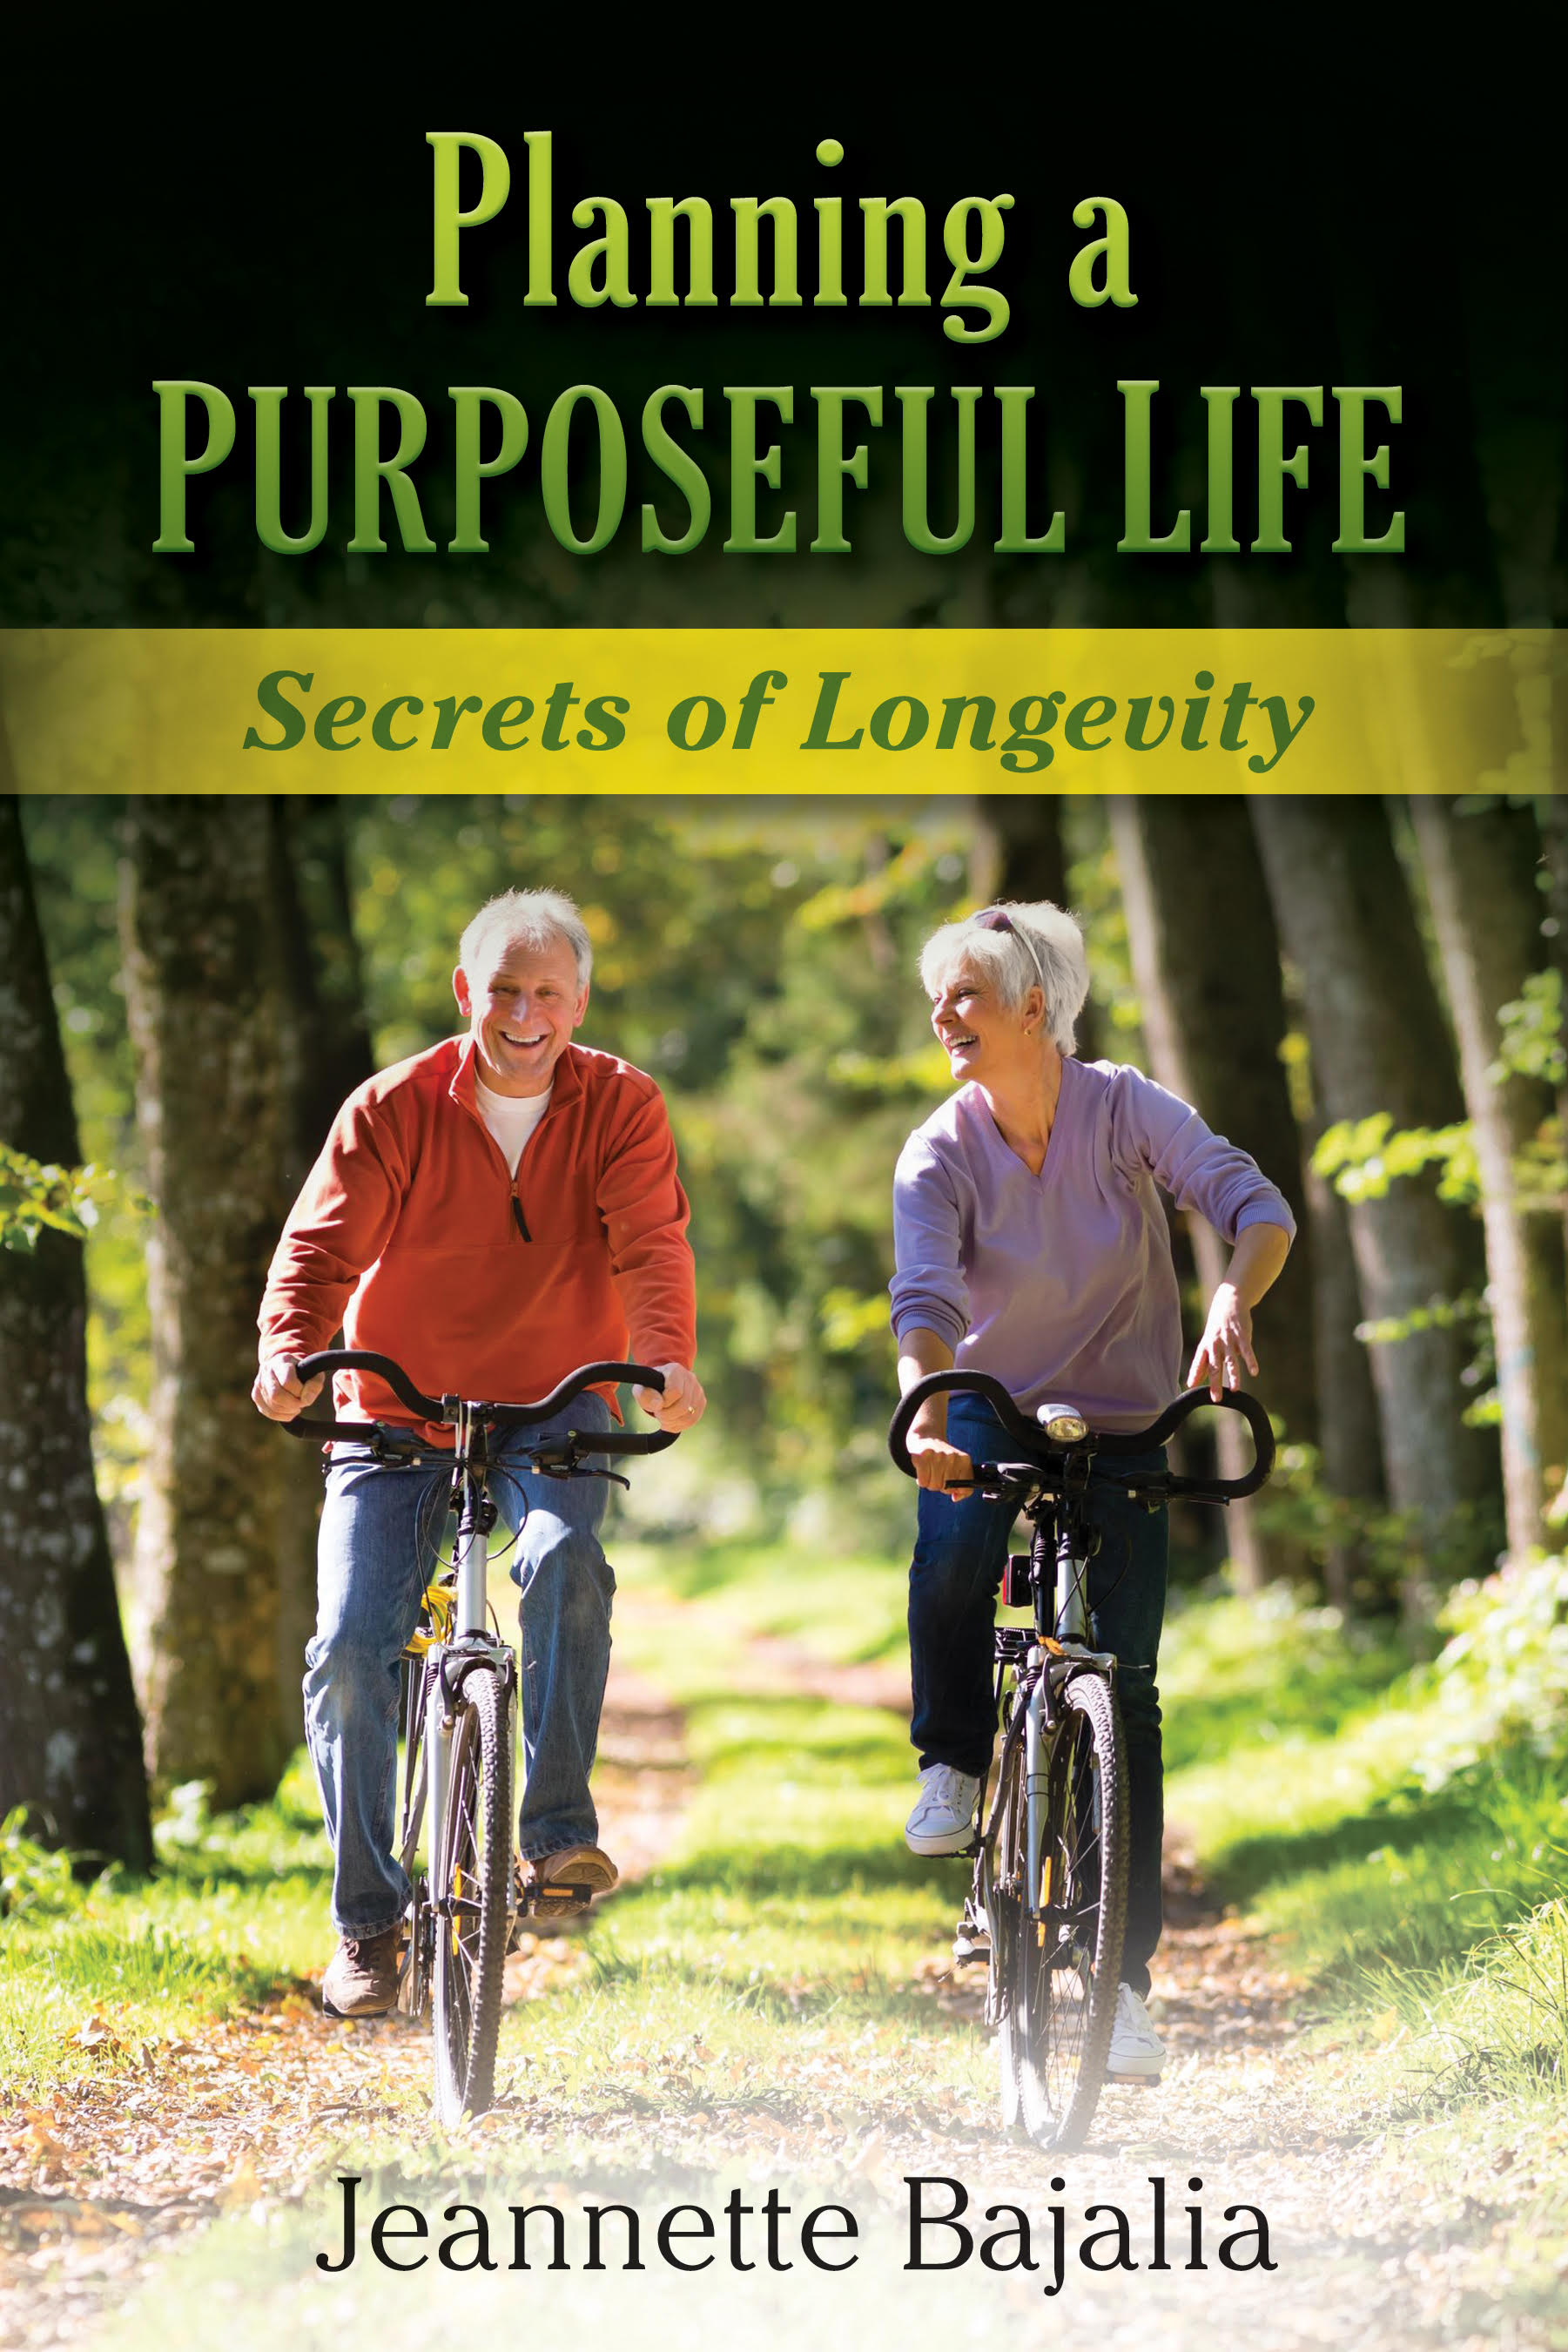 Planning a PURPOSEFUL LIFE: Secrets of Longevity - Jeannette Bajalia